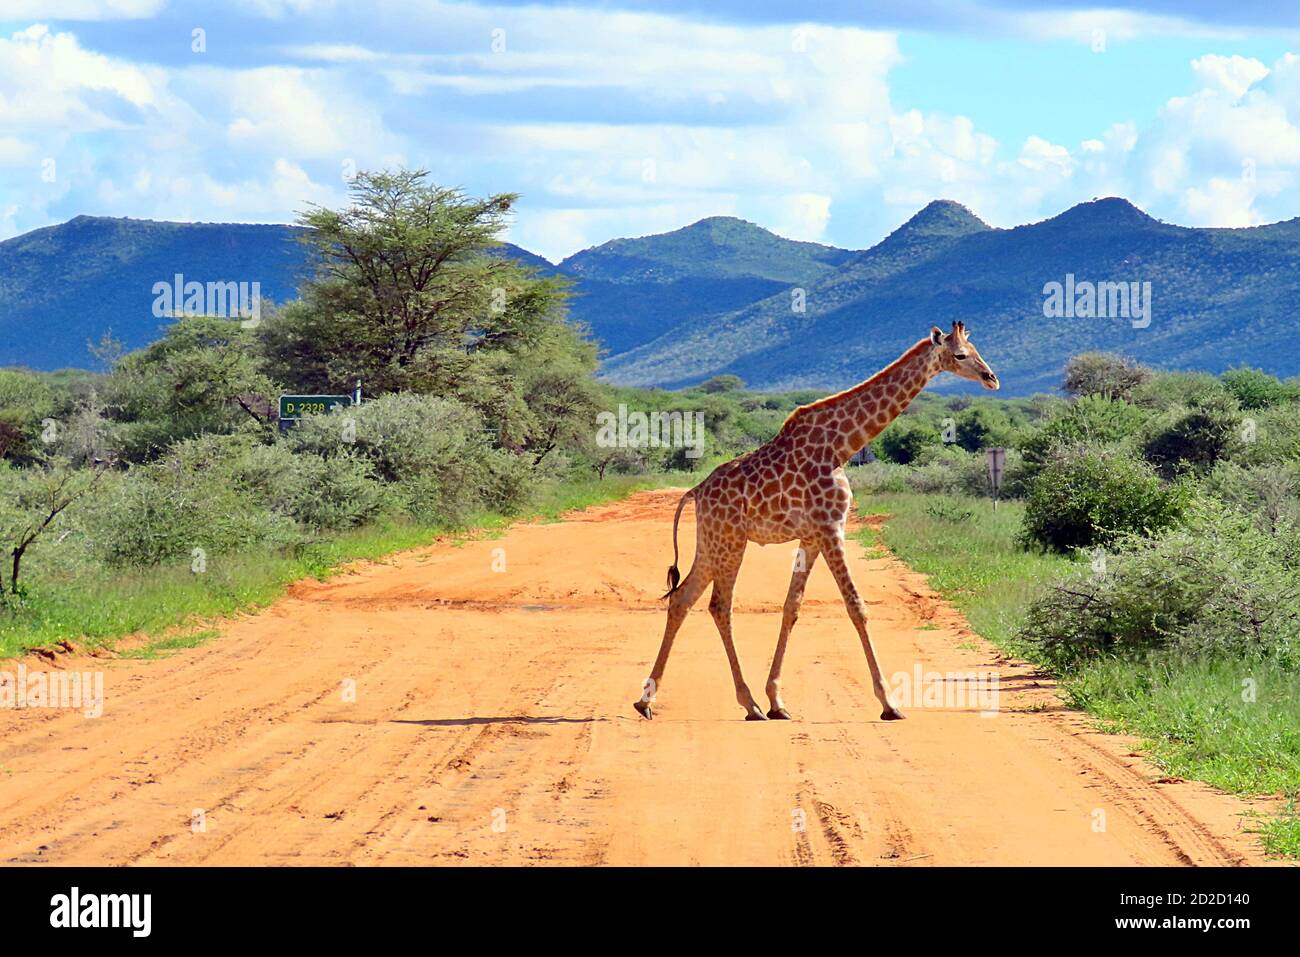 Une girafe sud-africaine (Giraffa camelopardalis giraffa) traversant une route de terre dans la réserve d'Erindi, en Namibie. Banque D'Images